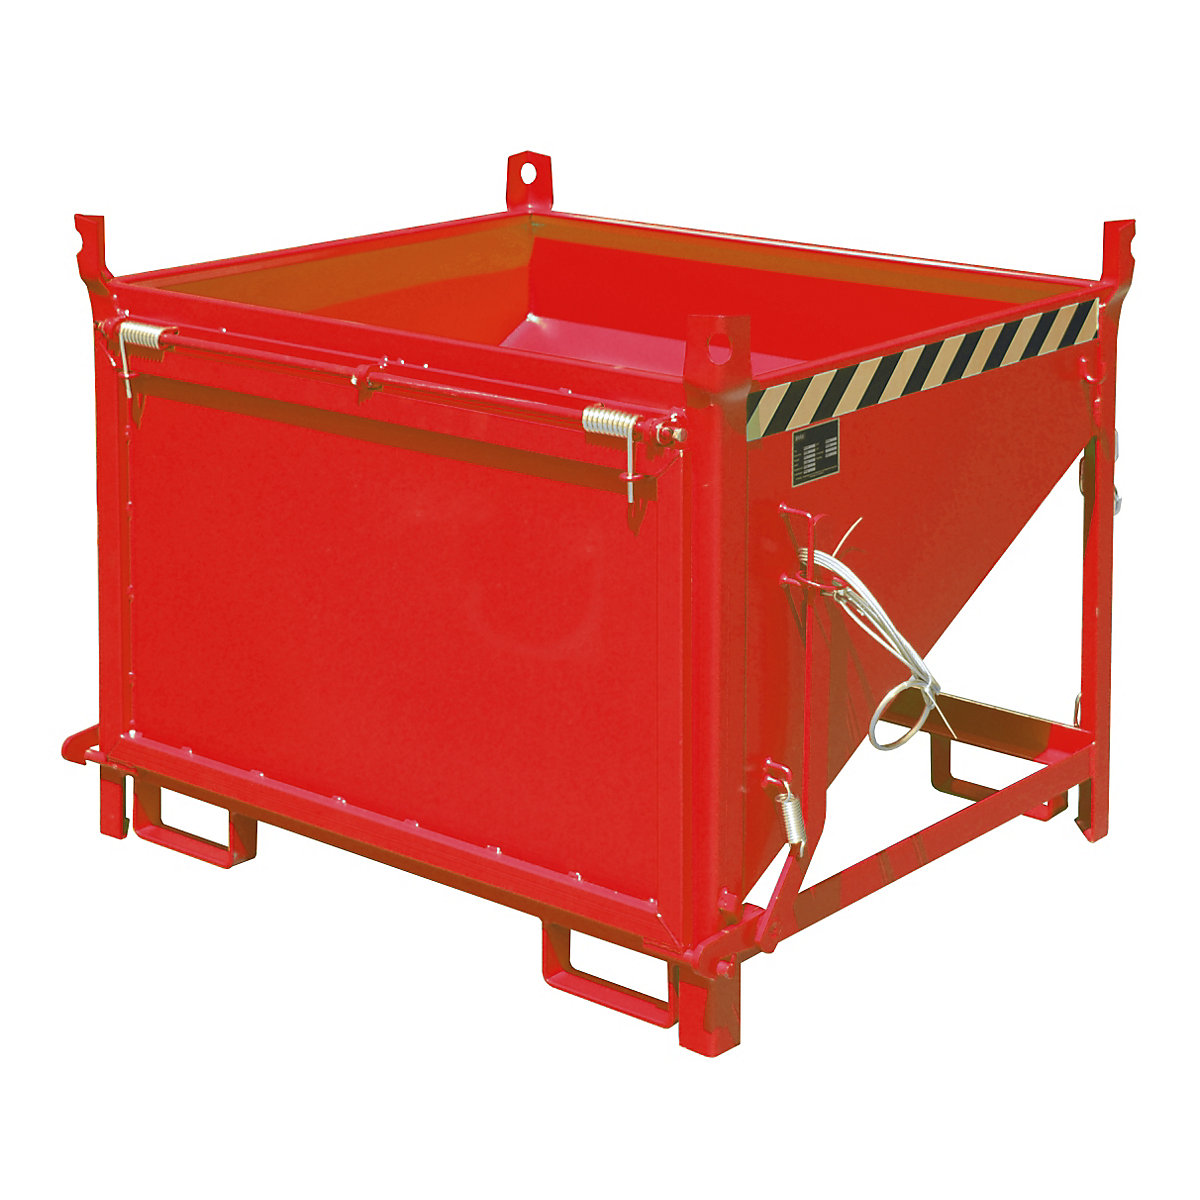 Prekucni zaboj – eurokraft pro, prostornina 0,50 m³, z loputo na čelni strani, ognjeno rdeče barve RAL 3000-4